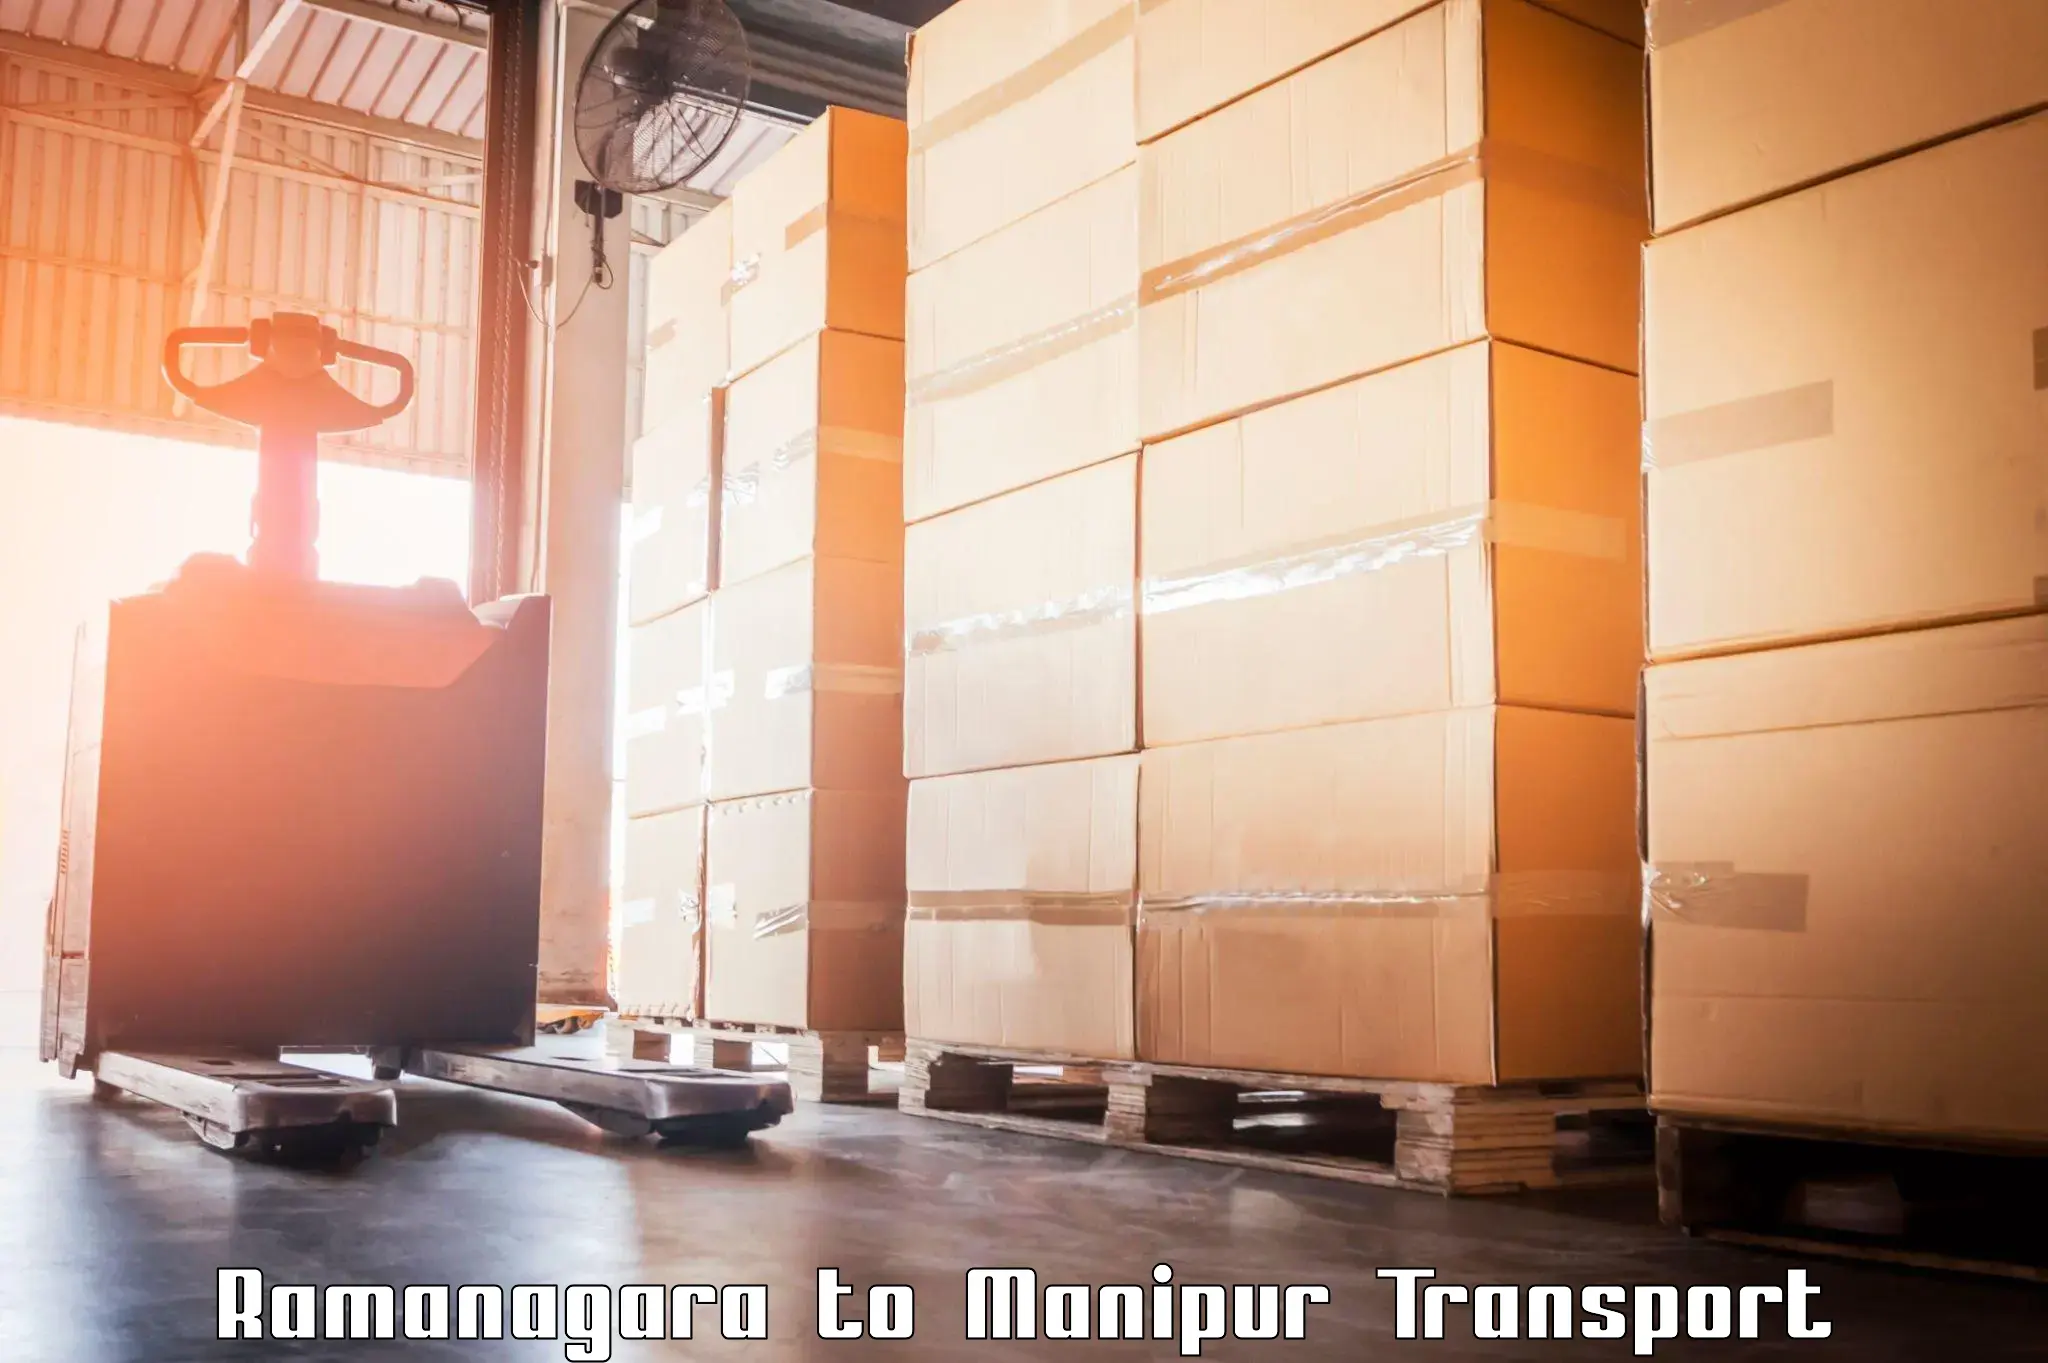 Online transport service Ramanagara to NIT Manipur